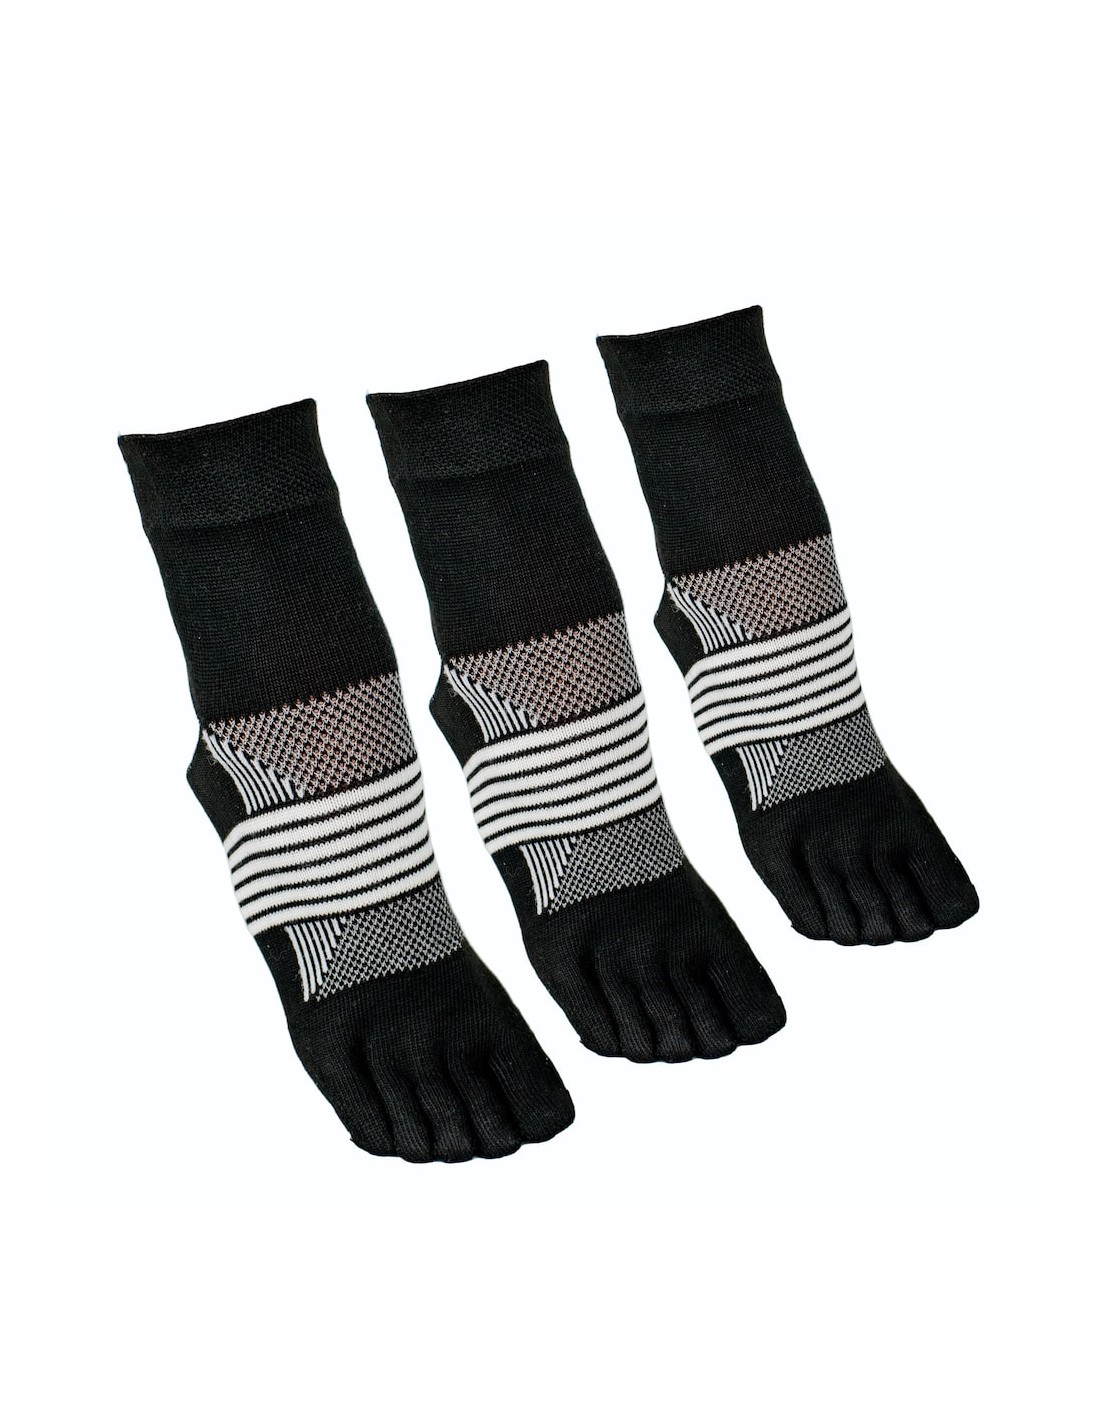 Ortles Proto 1 - Trail Running 5 Finger Socks